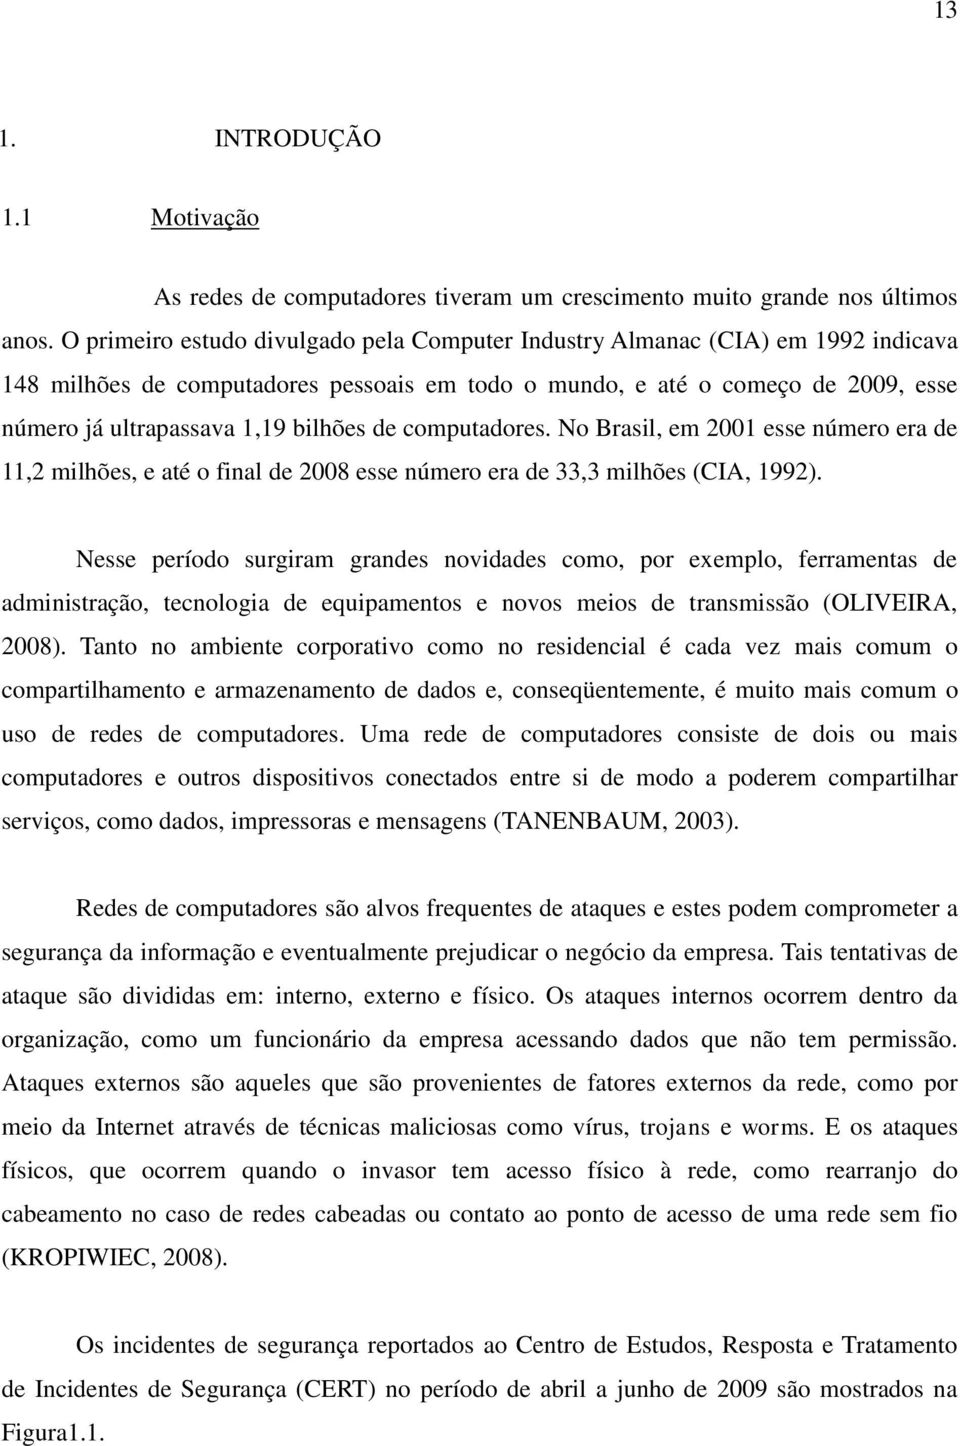 bilhões de computadores. No Brasil, em 2001 esse número era de 11,2 milhões, e até o final de 2008 esse número era de 33,3 milhões (CIA, 1992).